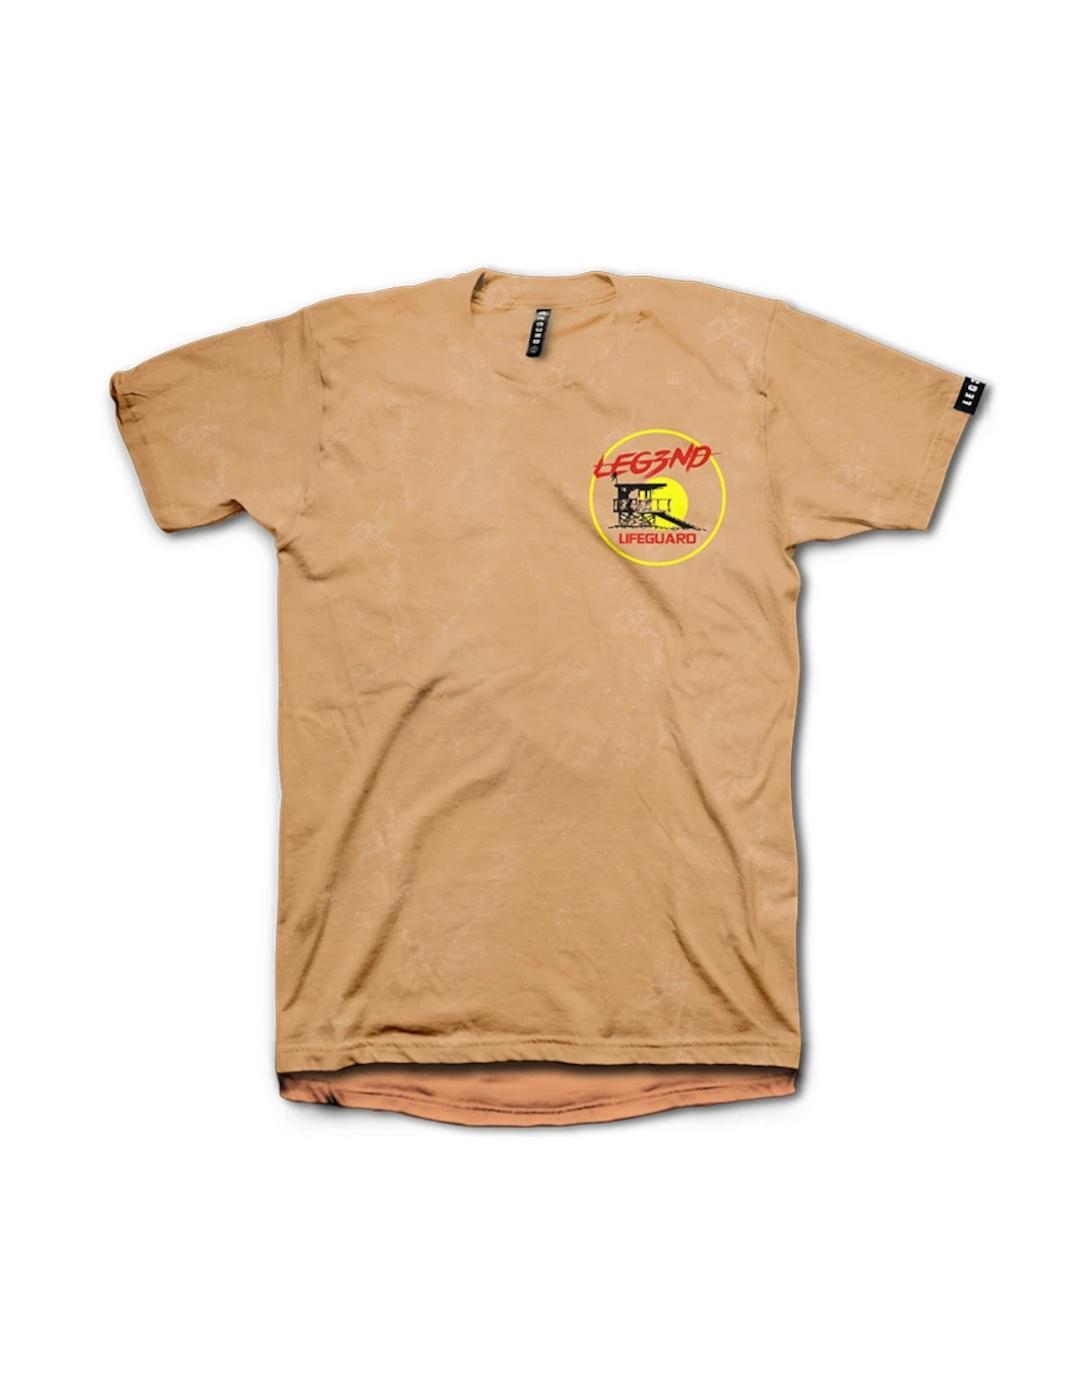 Camiseta Leg3nd Baywatch naranja -y